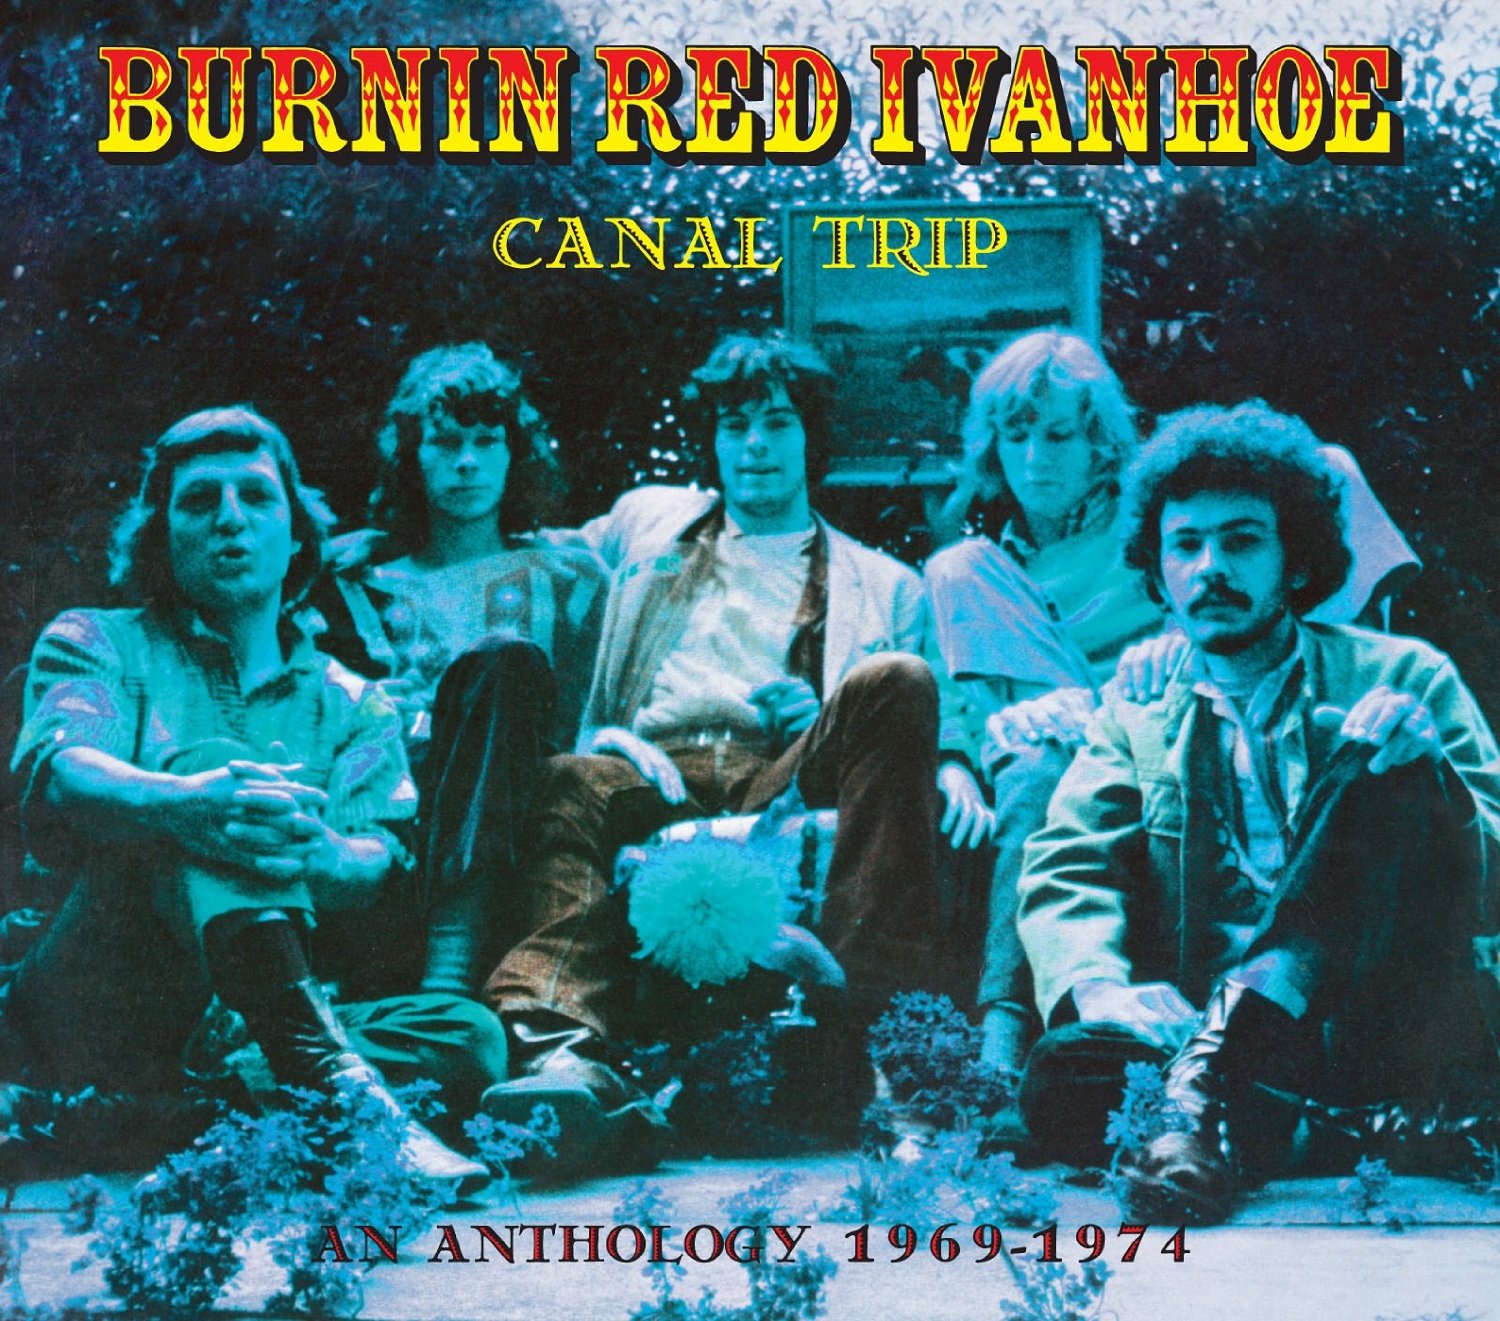 Burnin Red Ivanhoe - Topic 